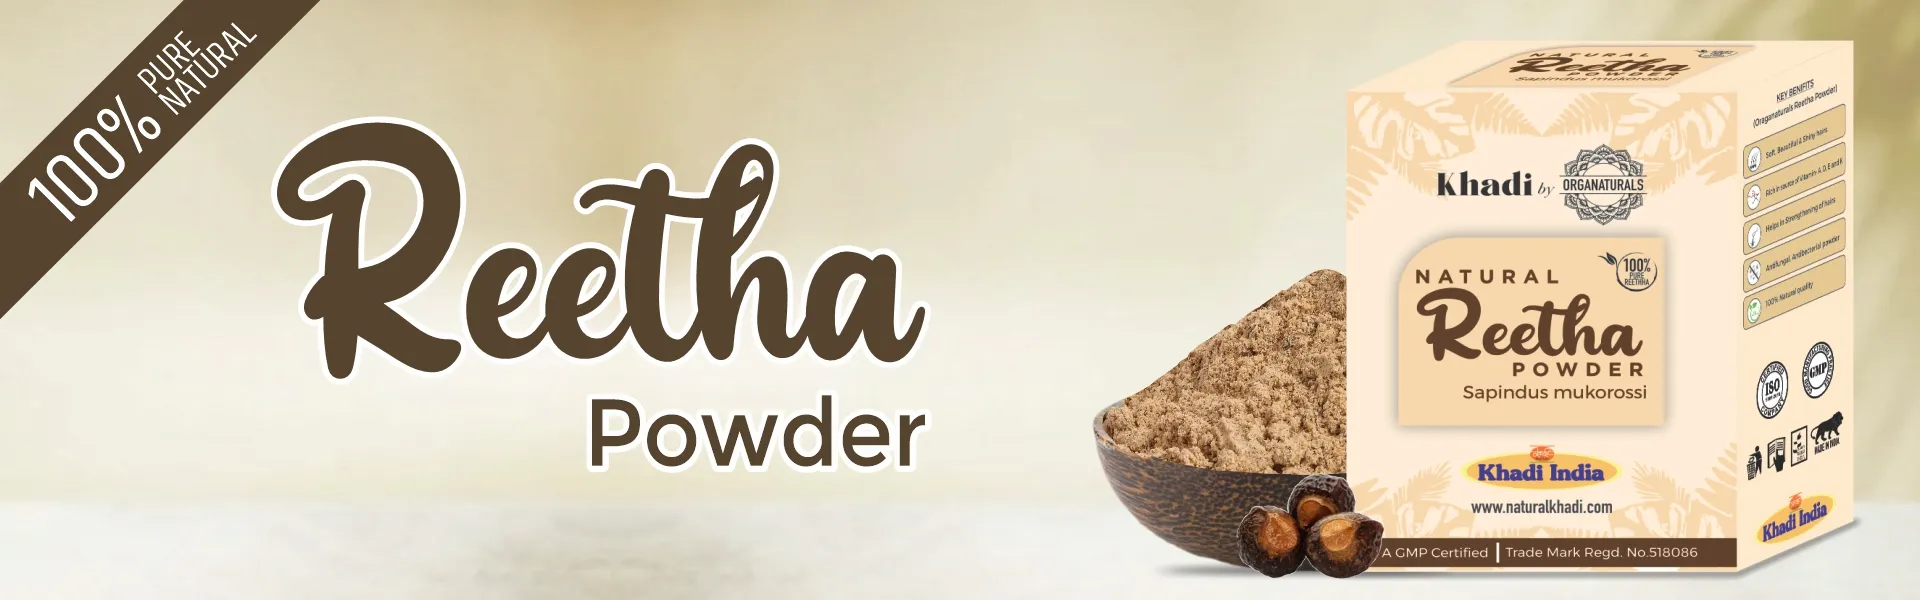 Reetha Powder - www.dkihenna.com